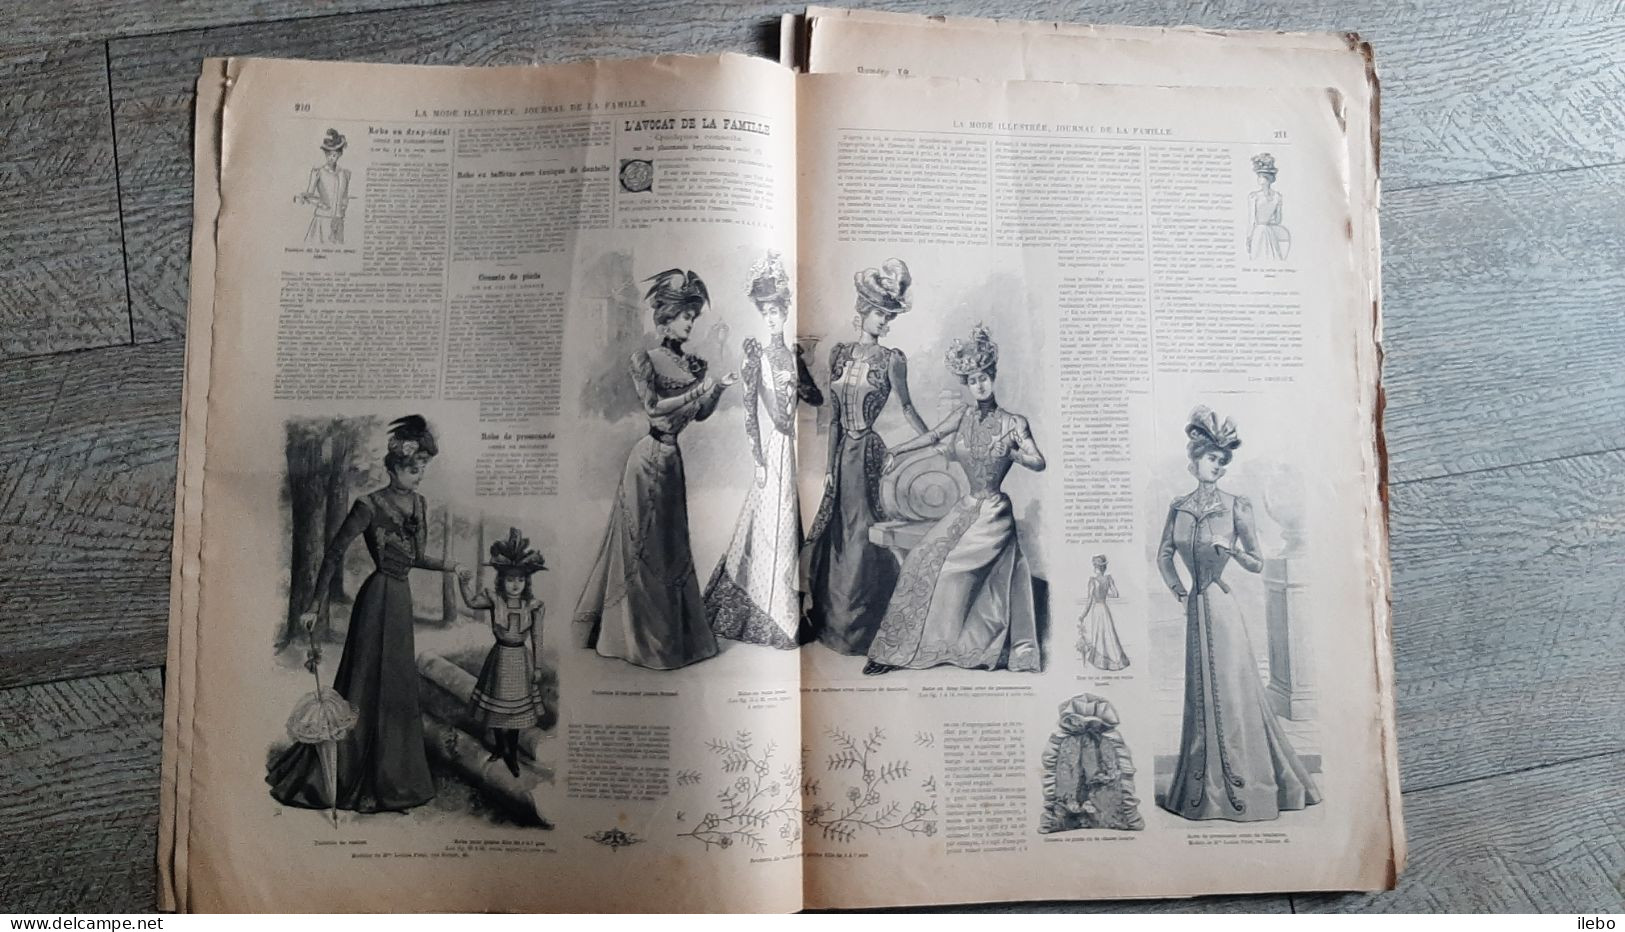 8 revues la mode illustrée journal de la famille 1899   broderie gravures